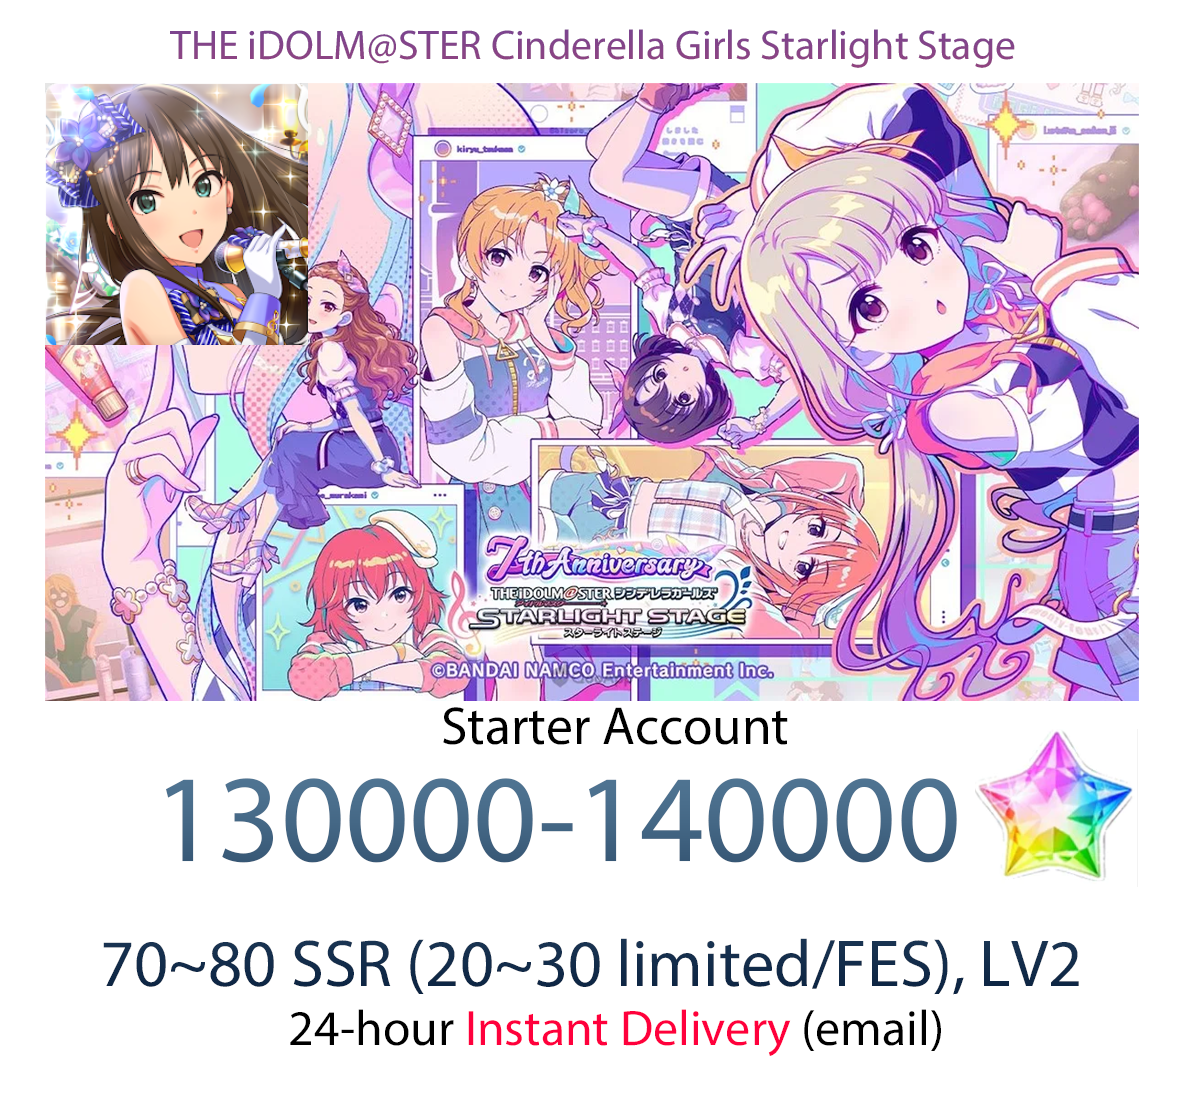 [JP] [INSTANT] Star Jewel Idolmaster Cinderella Girls Starlight Stage iDOLM@STER Deresute Gems Starter Account